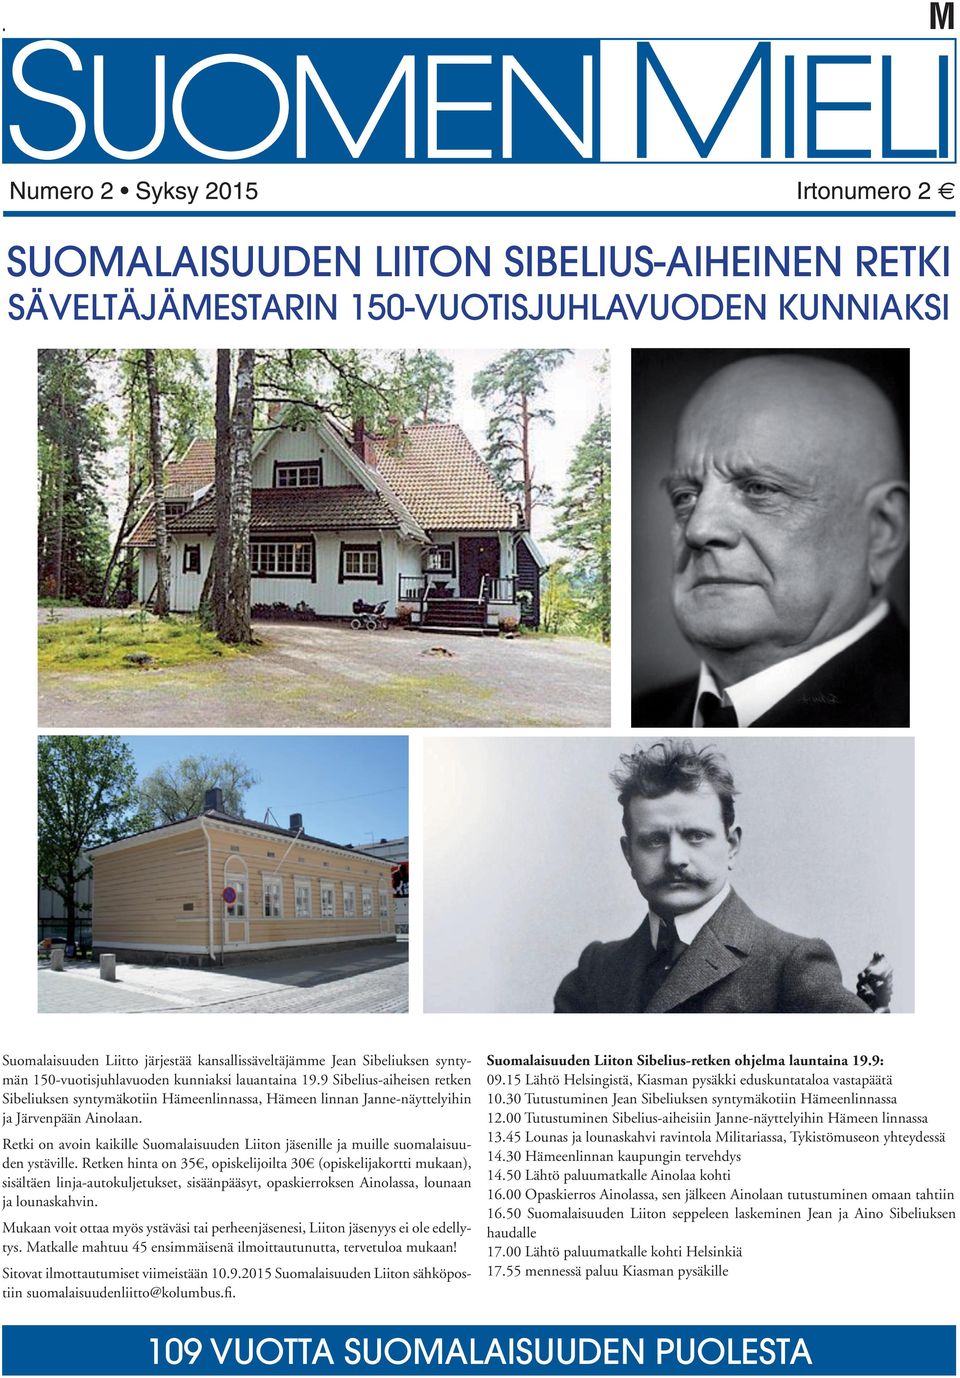 Retki on avoin kaikille Suomalaisuuden Liiton jäsenille ja muille suomalaisuuden ystäville.